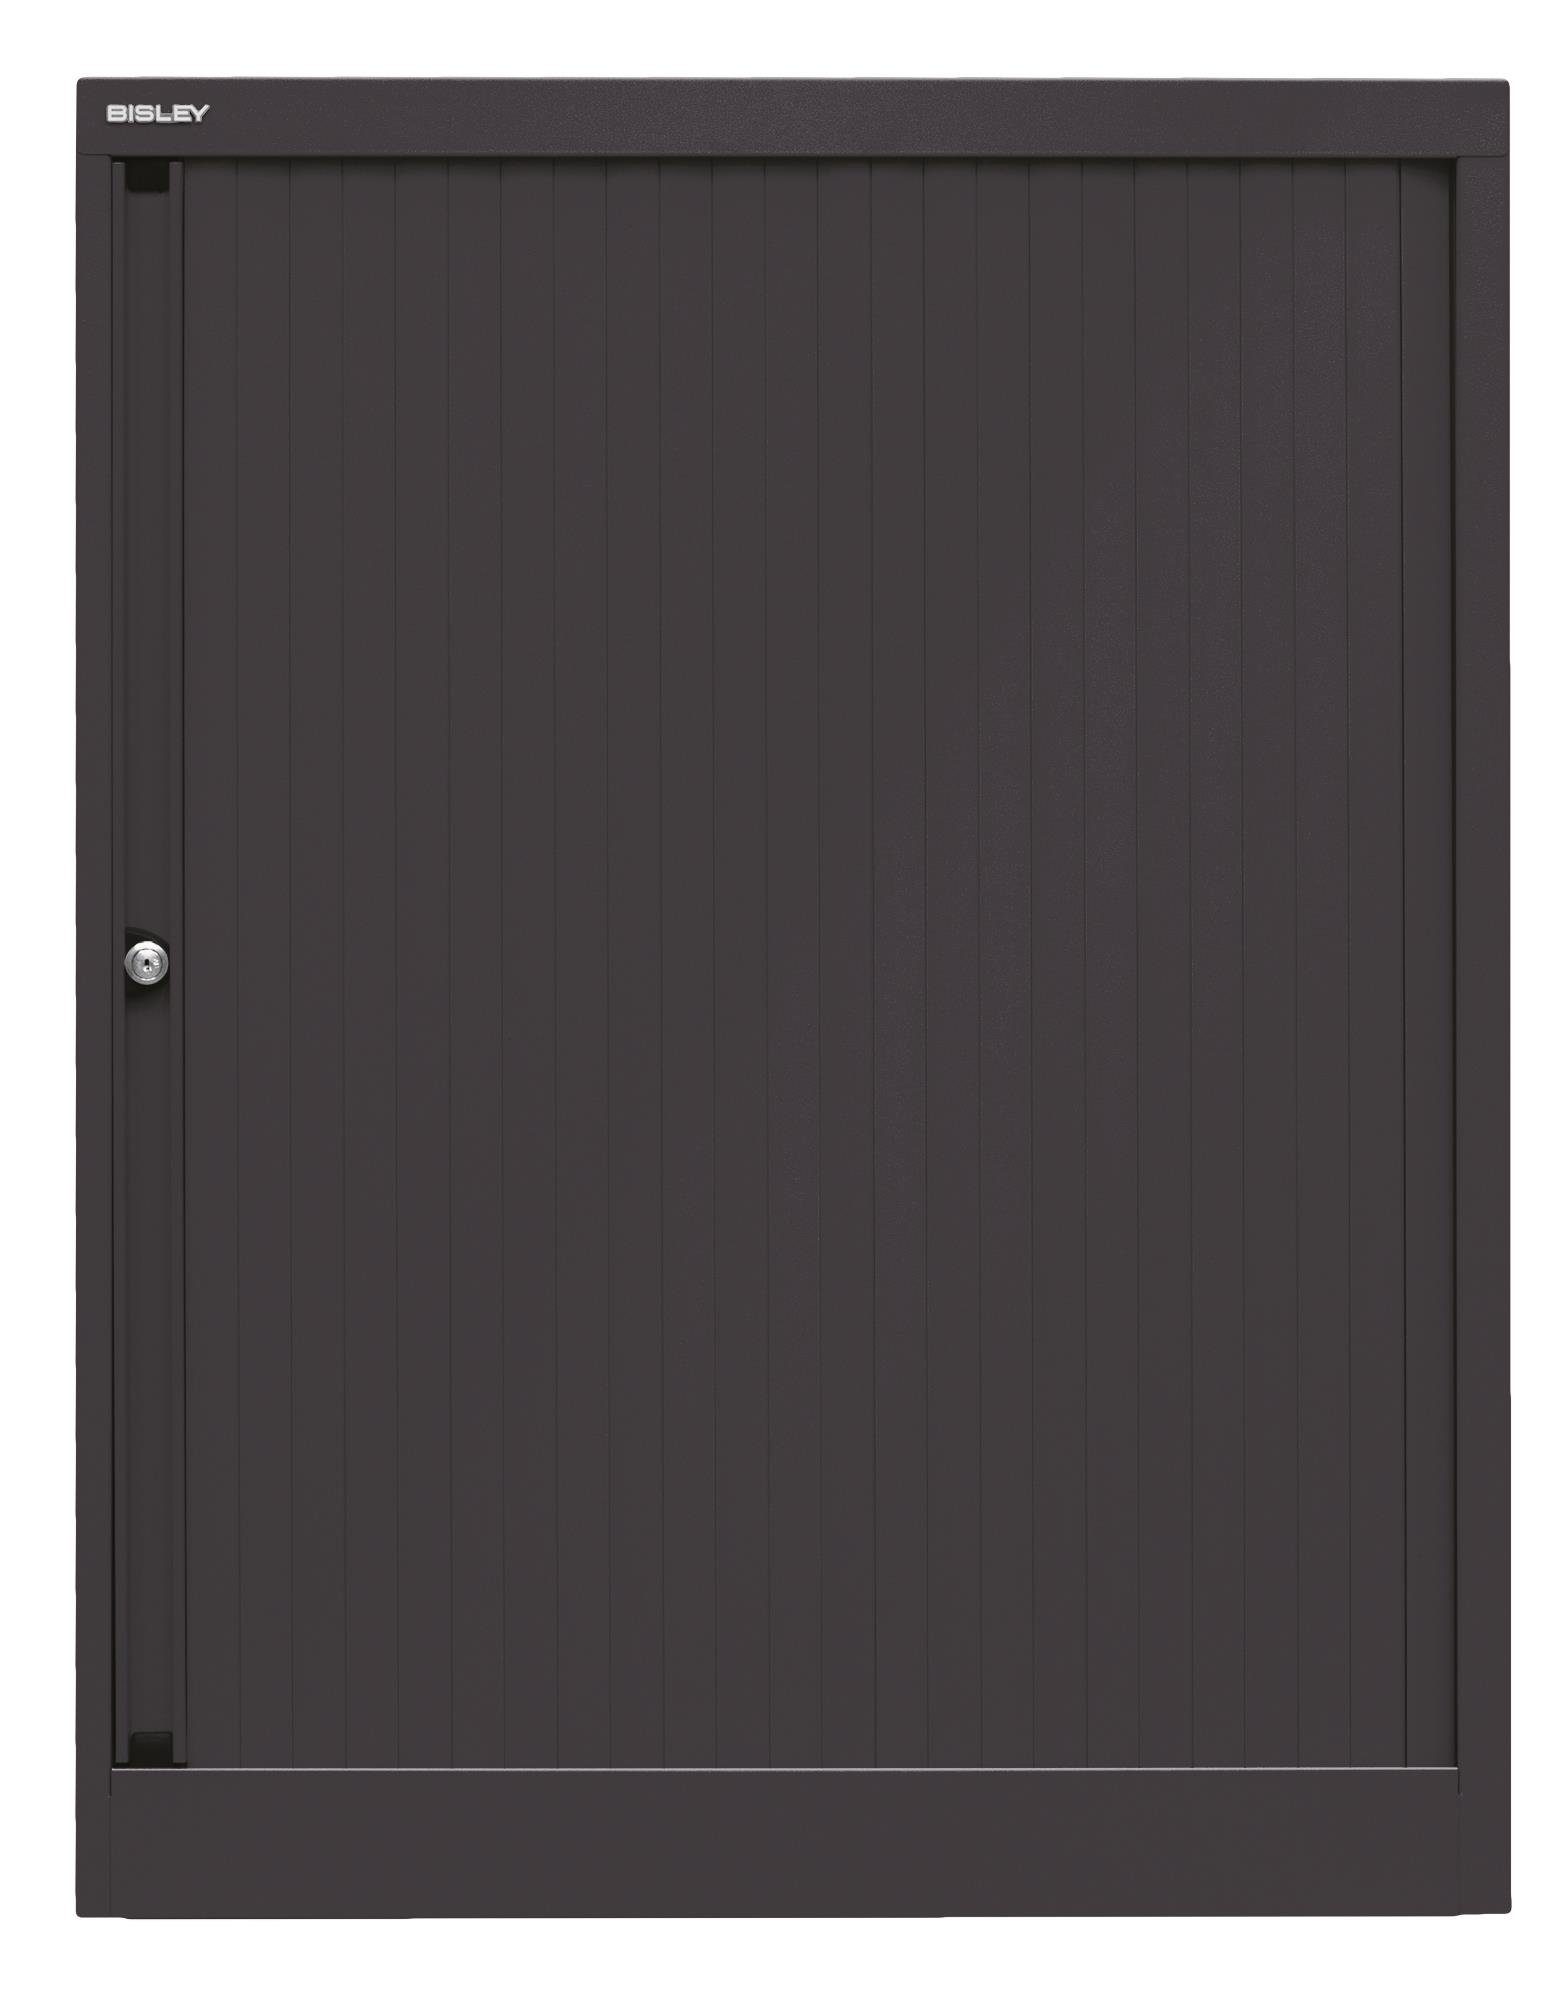 Korpus Rollladenschrank Bisley EUROTAMBOUR Rollladen schwarz, schwarz 5633